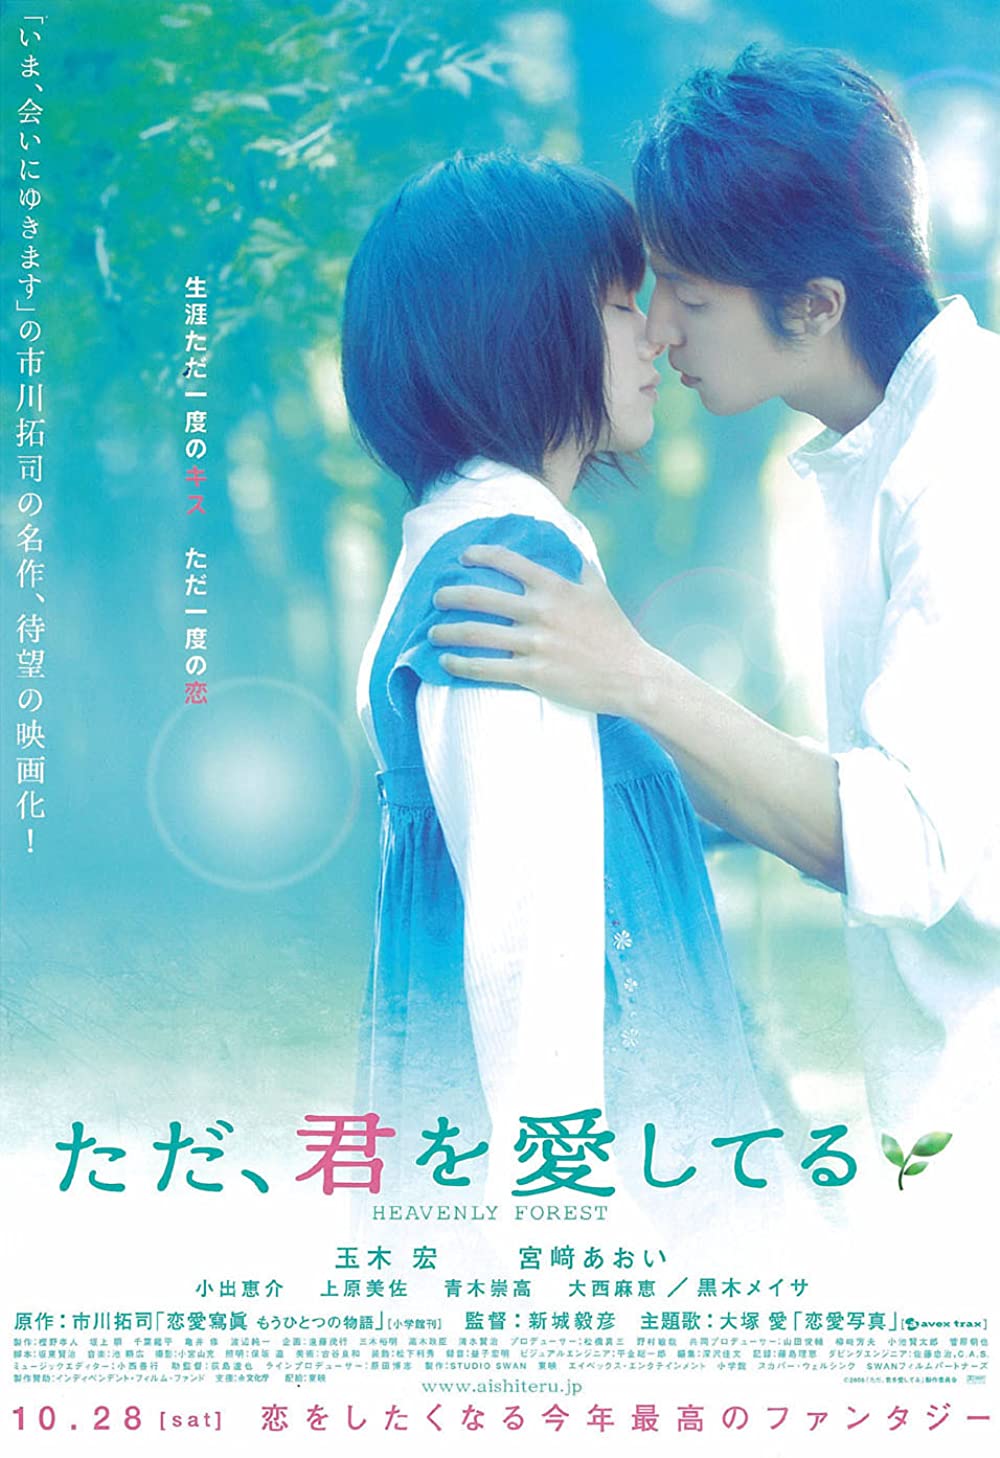 Những bộ phim Nhật Bản hay về tình yêu: Khi yêu - Heavenly Forest (2006)